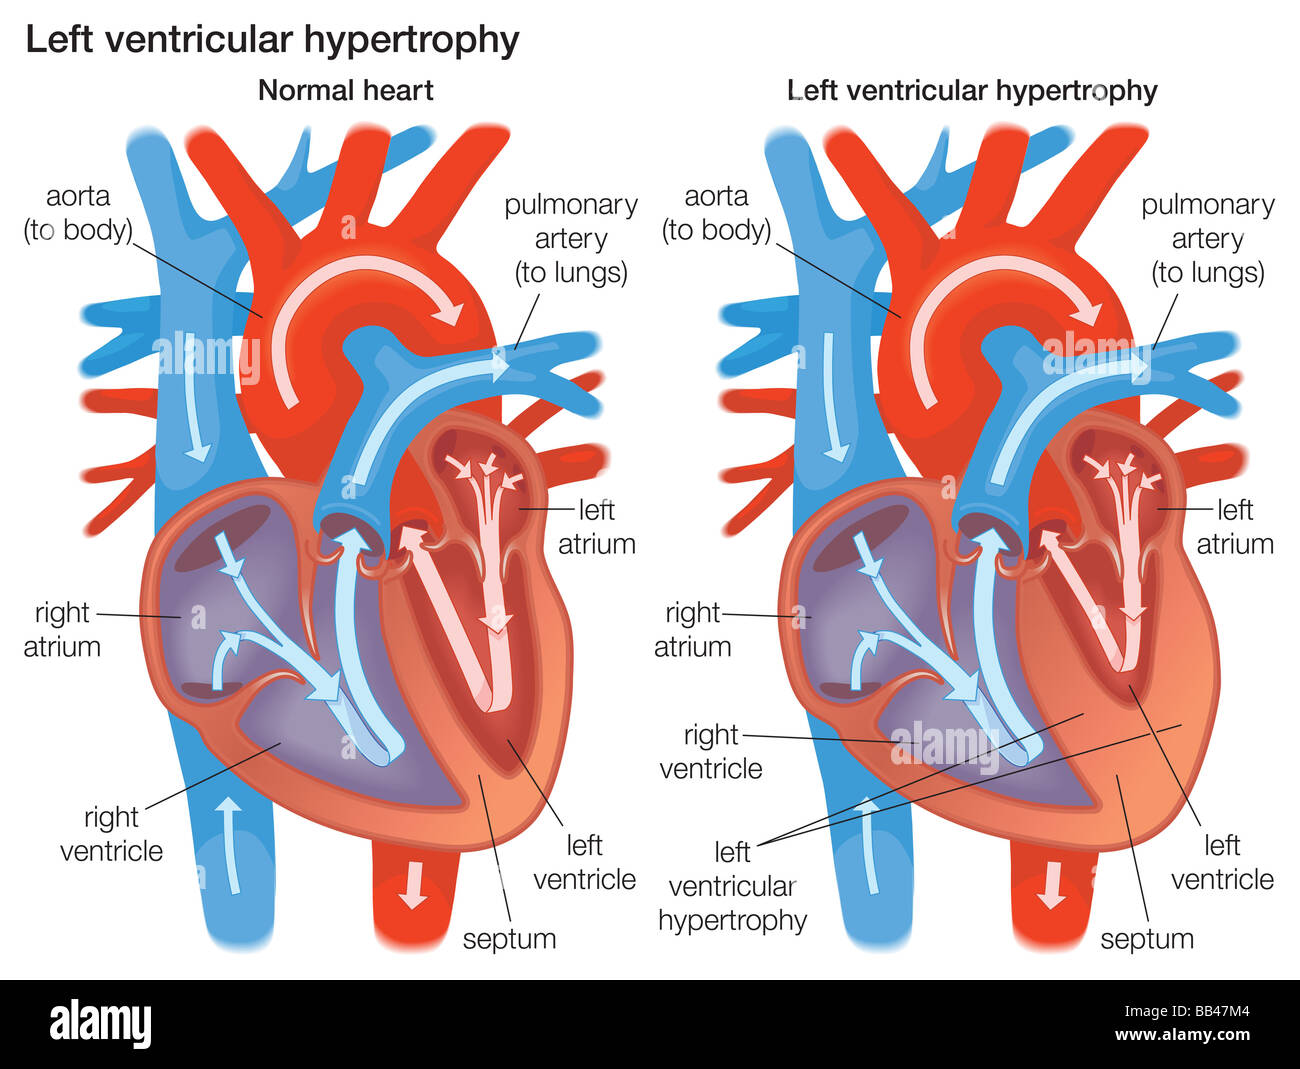 Querschnitt durch einen Vergleich der linken Ventrikelwand normales Herz zu einer linken Ventrikelwand, die Hypertrophie erlebt hat. Stockfoto